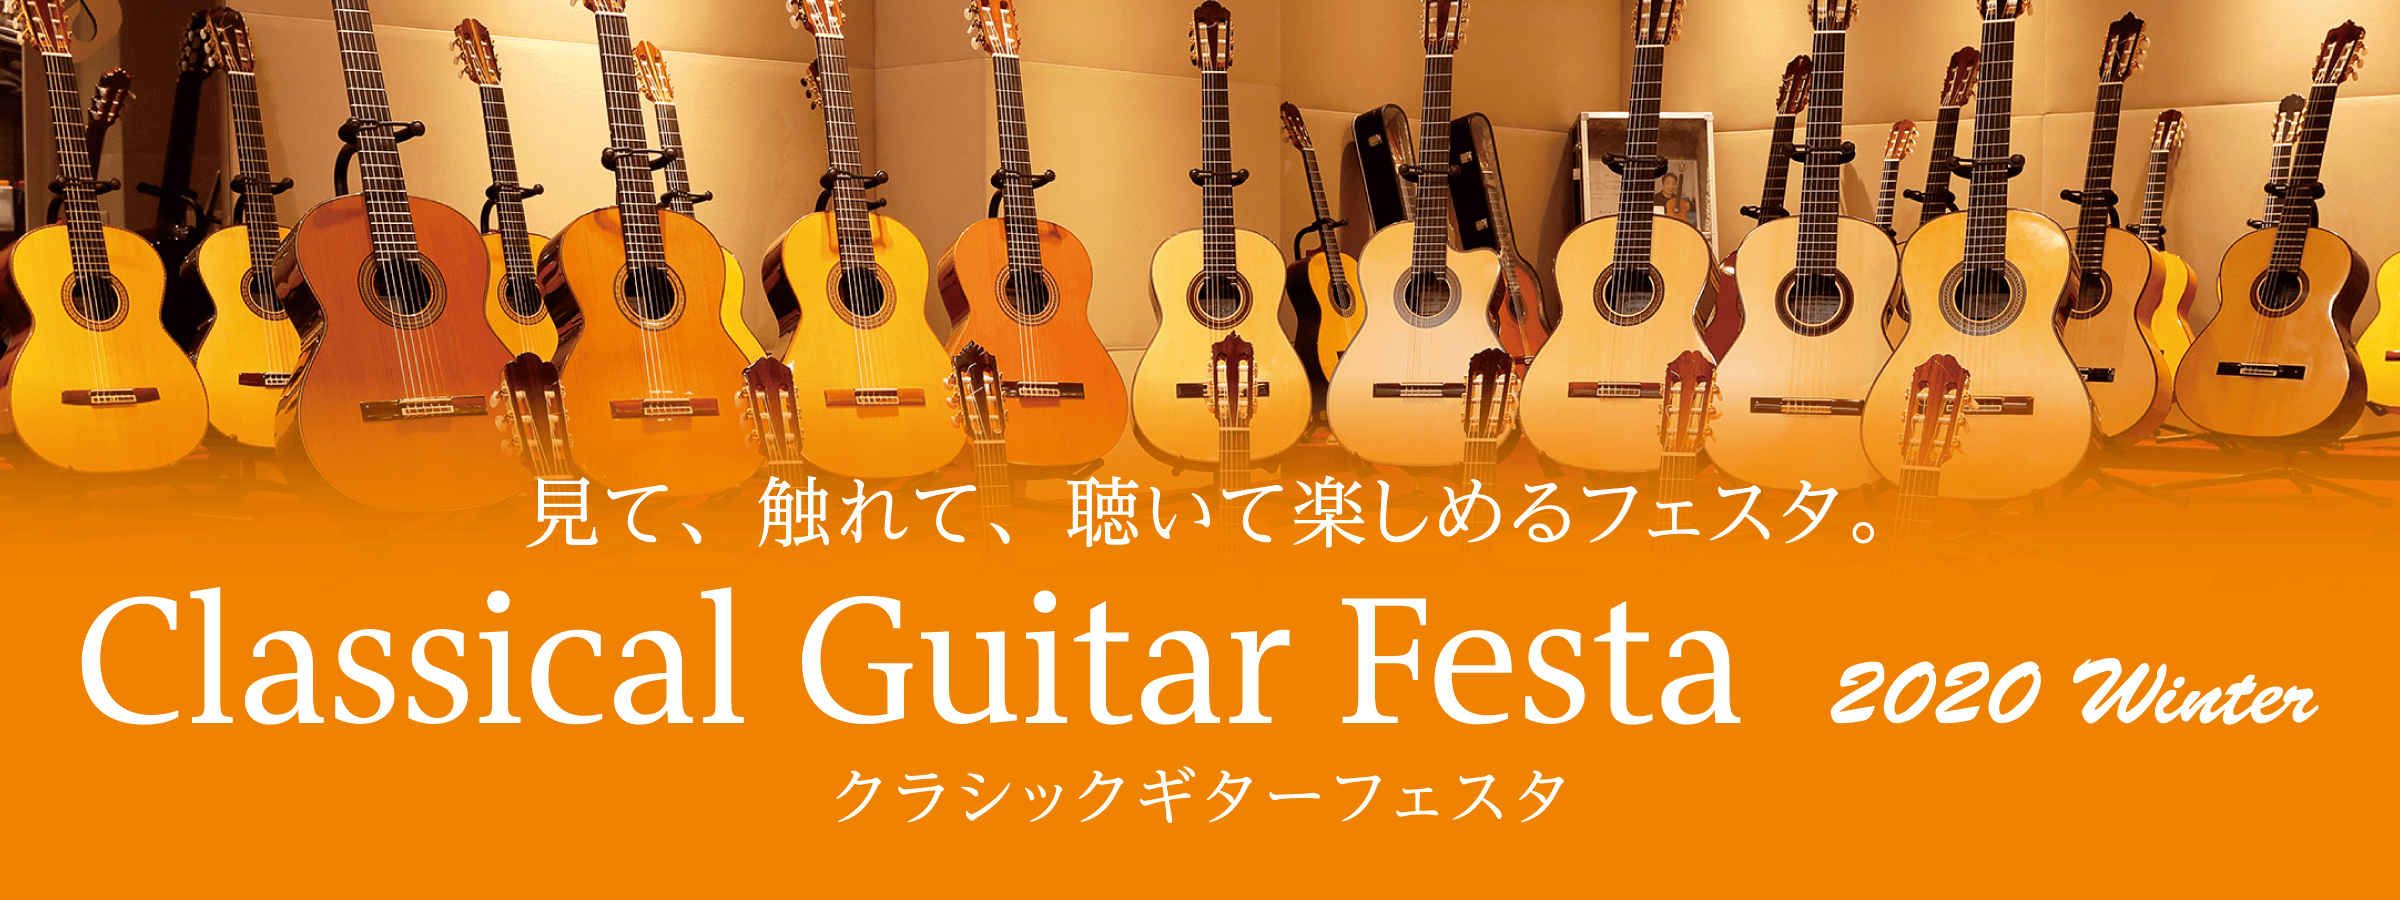 クラシックギターフェスタ2020-2021冬【2021年1月15日(金)~17日(日)】出展商品とイベントのご紹介！